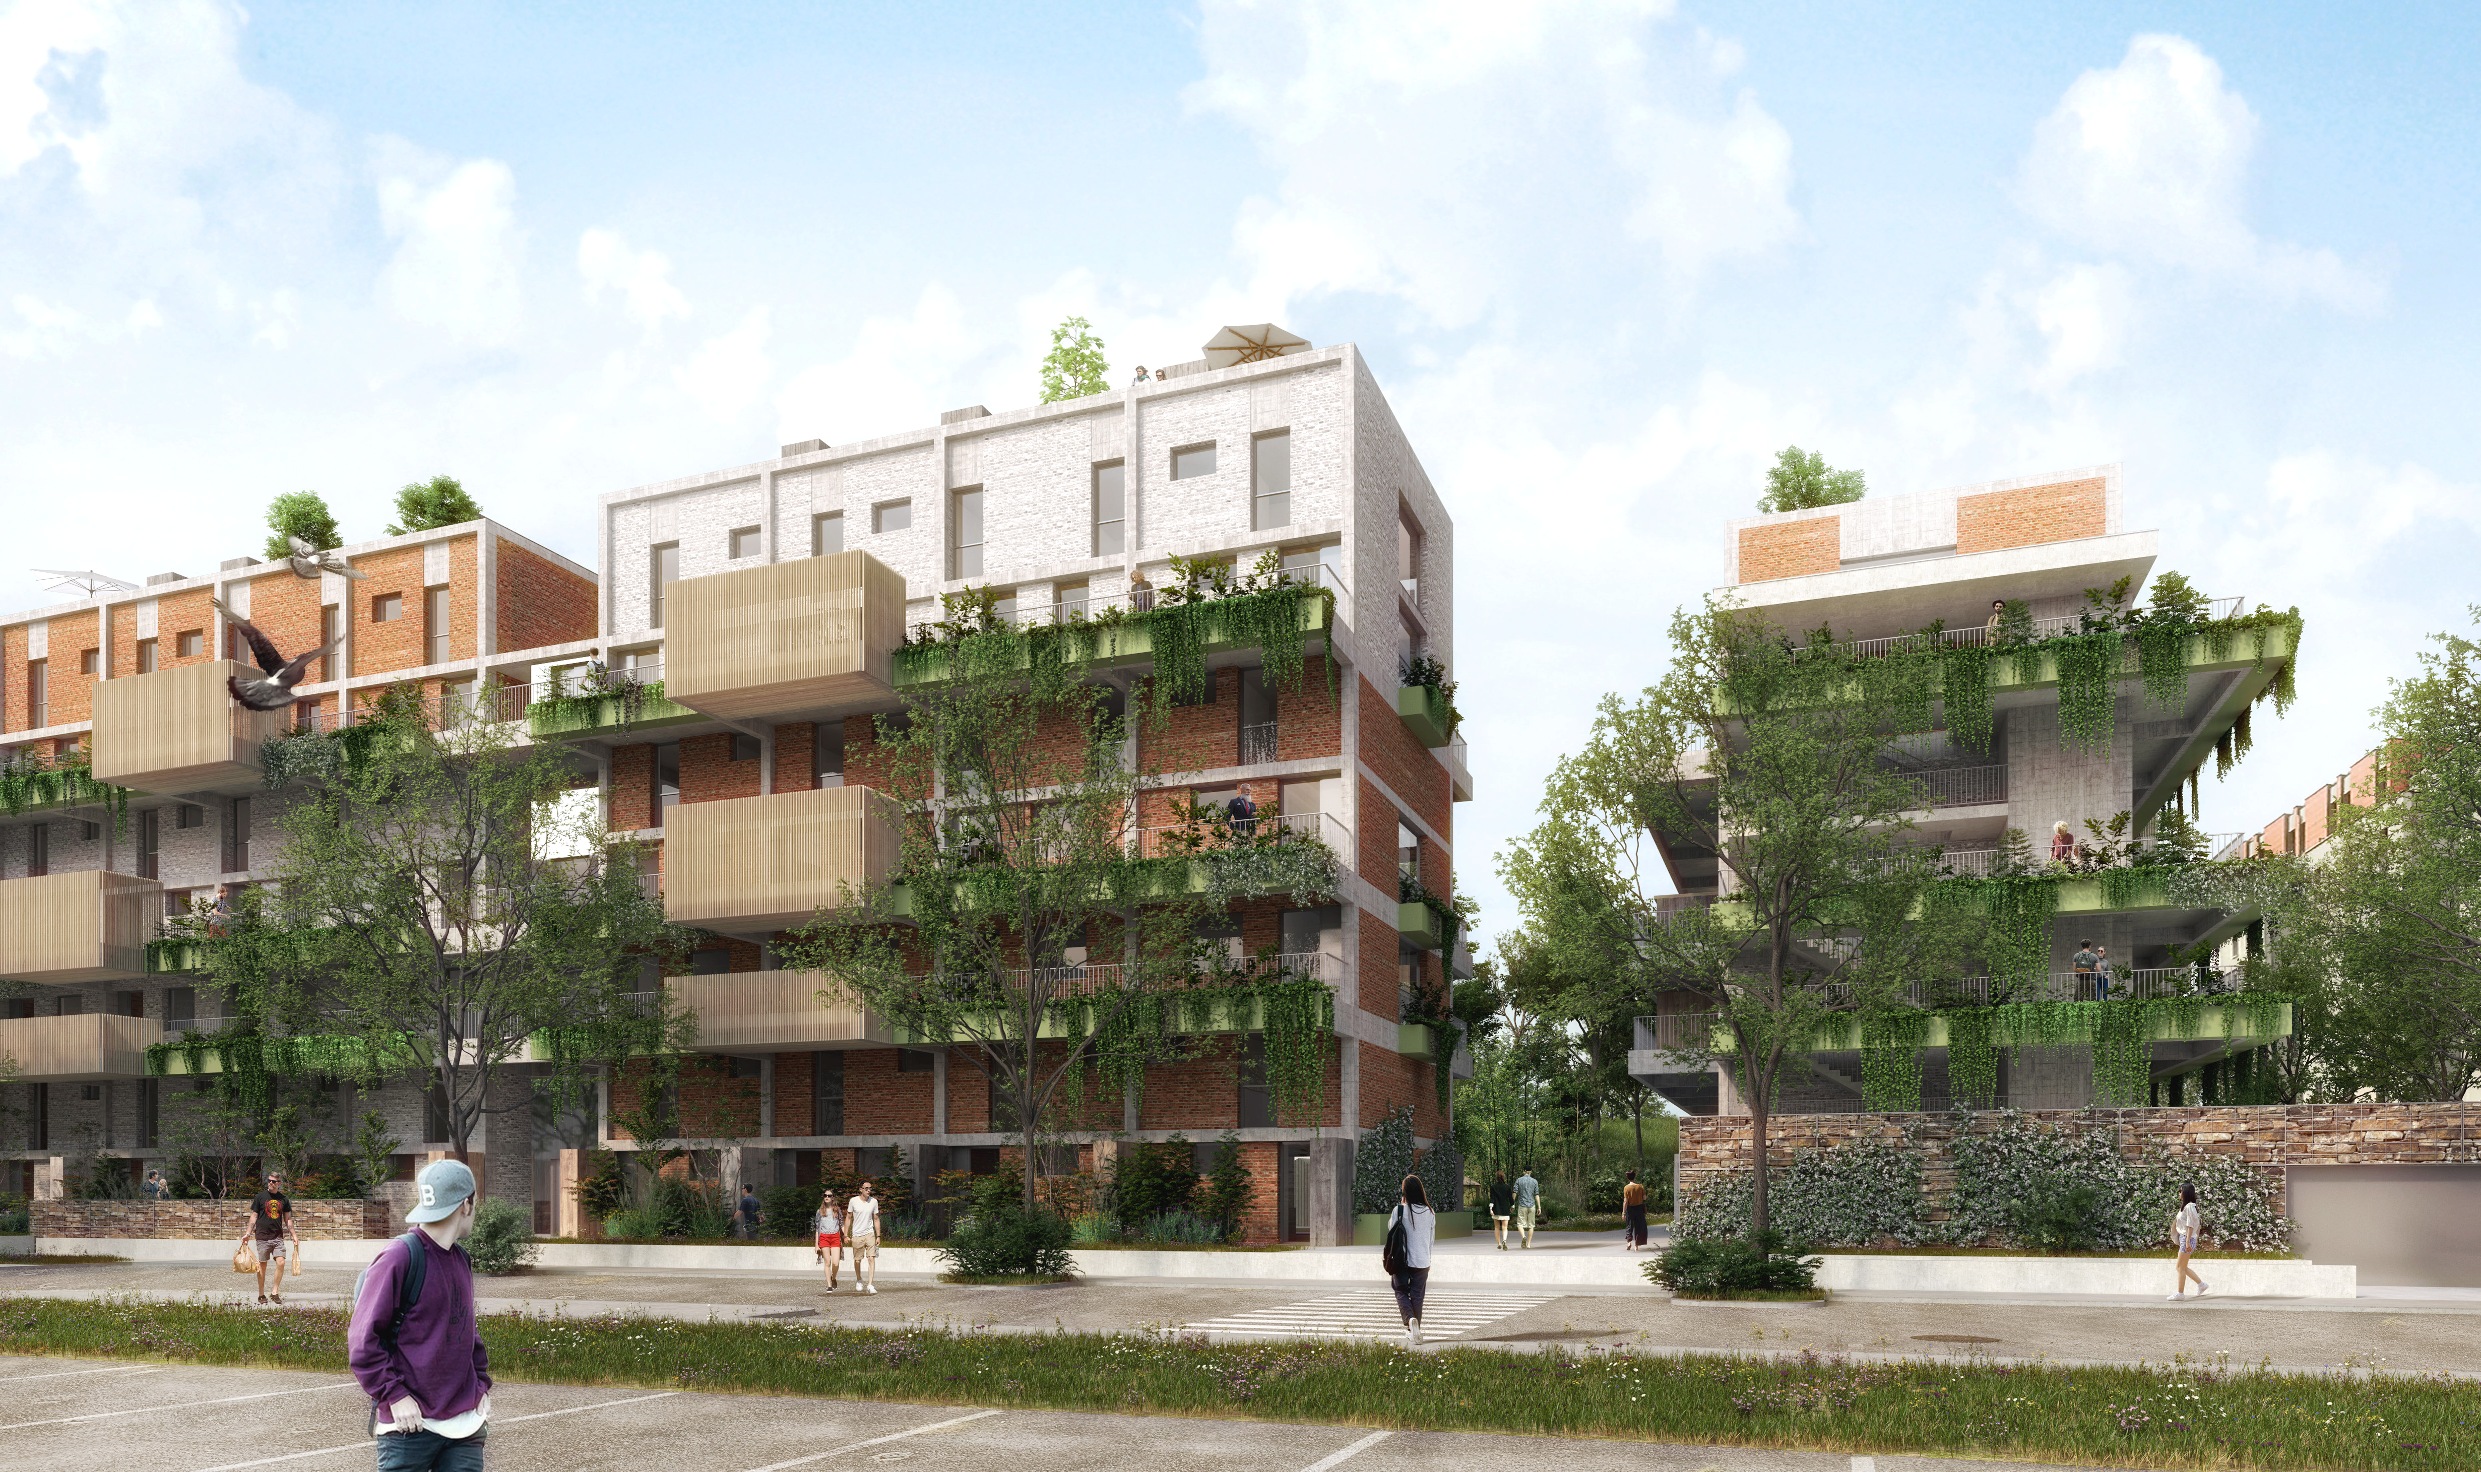 Appartements, terrasse, Greenlofts